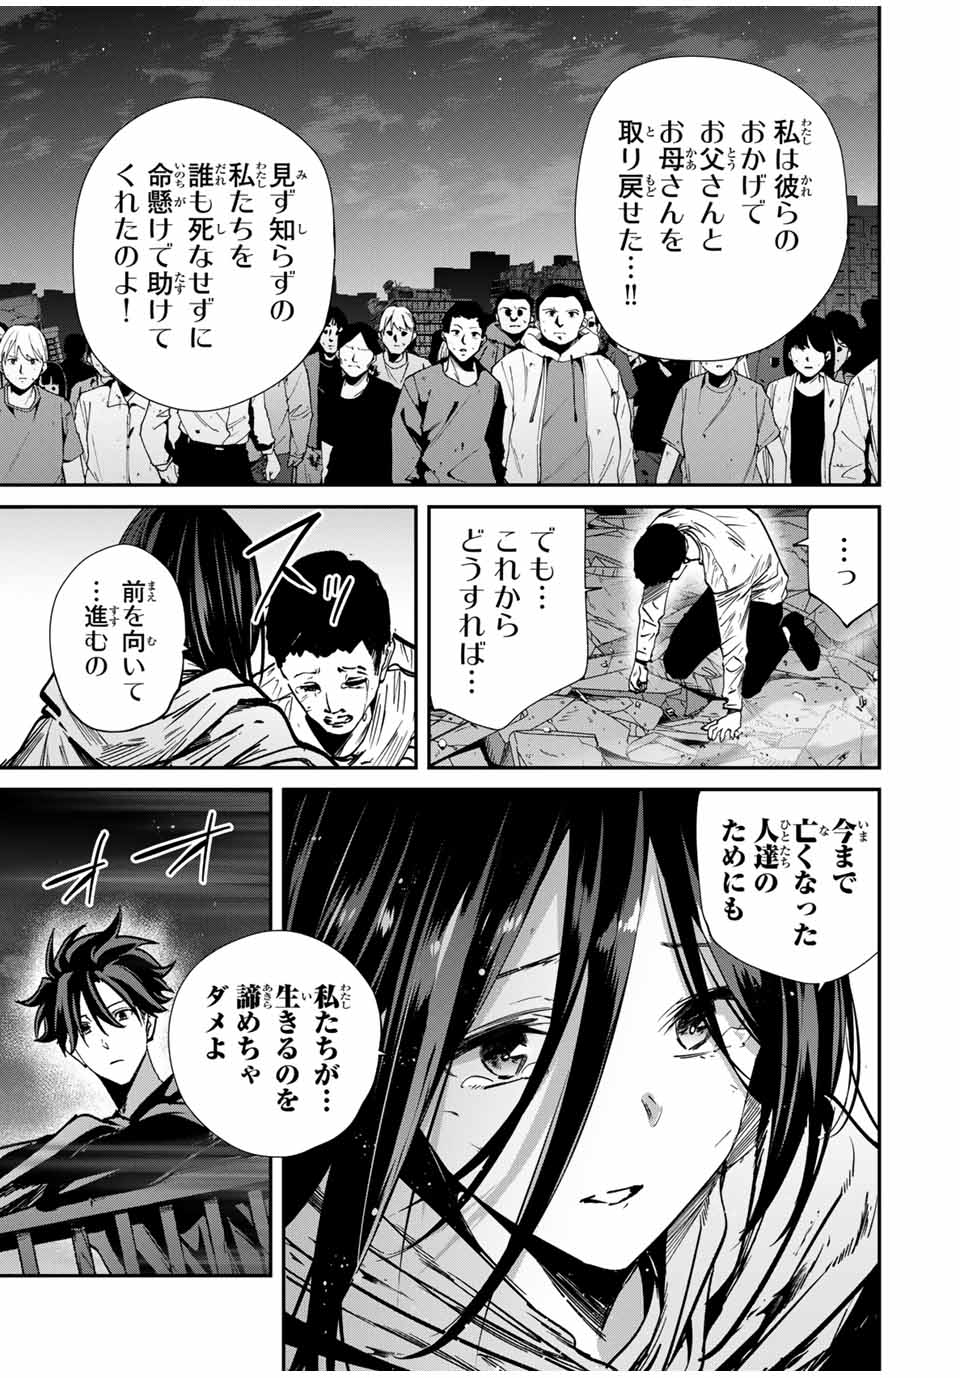 Kono Sekai ga Izure Horobu Koto wo, Ore dake ga Shitte Iru - Chapter 69 - Page 3